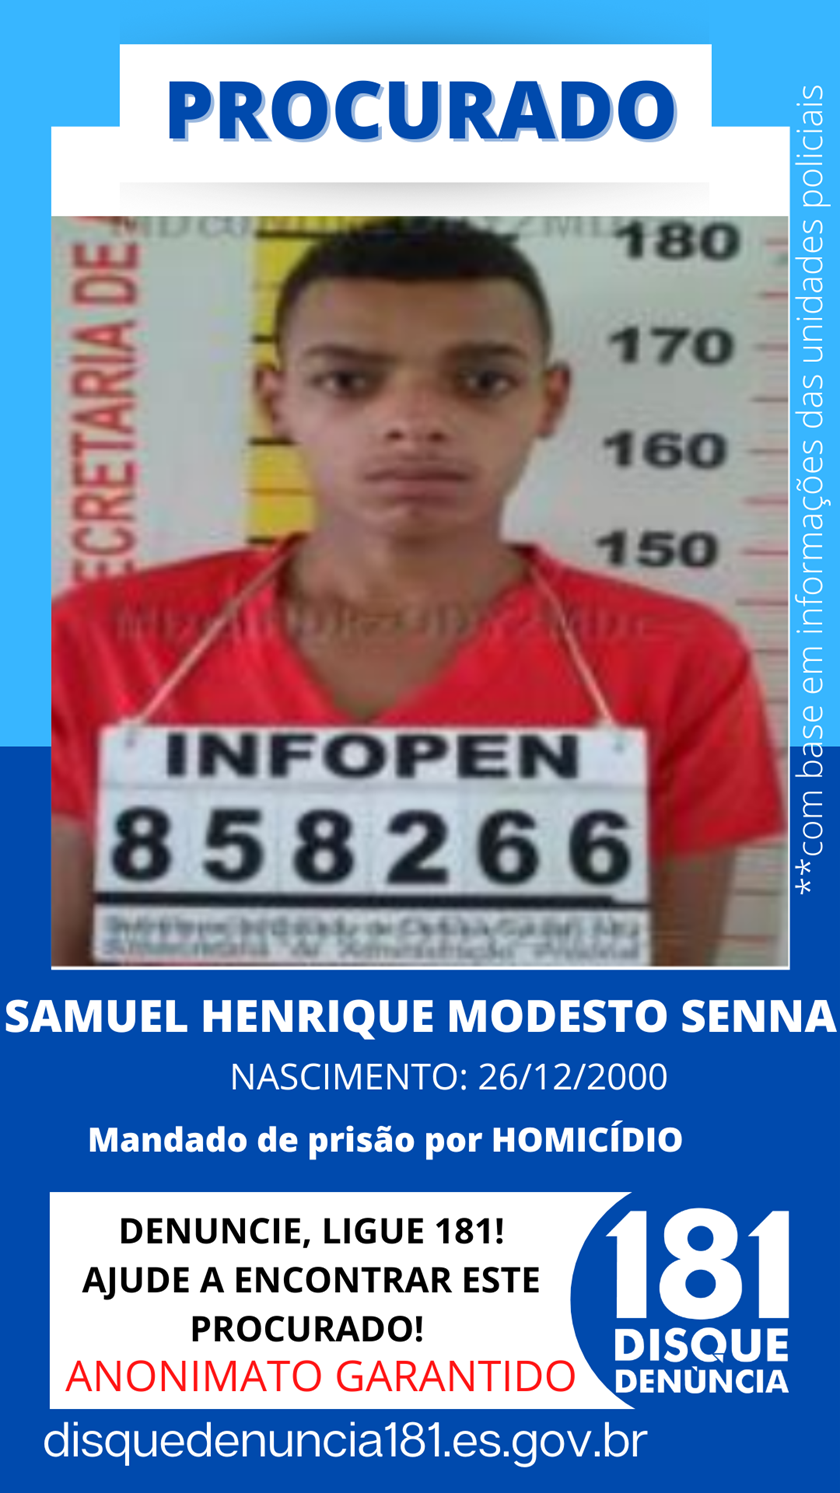 Logomarca - SAMUEL HENRIQUE MODESTO SENNA